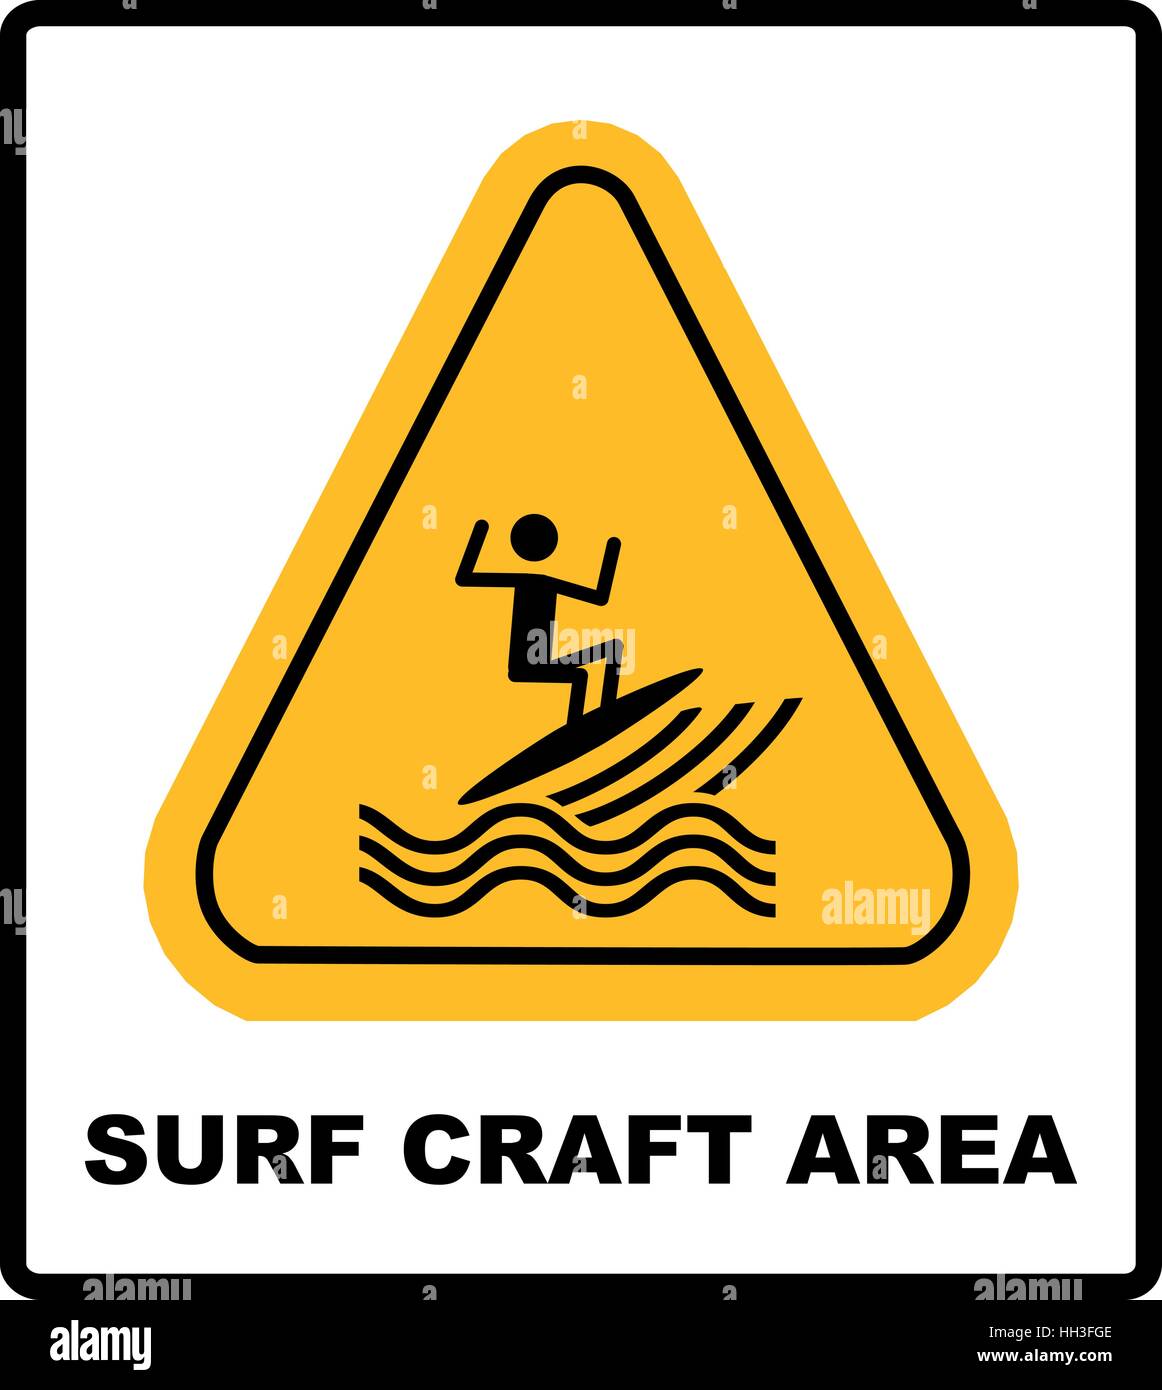 Sufr craft area. Zone de surf d'illustration vectorielle en symbole triangle jaune isolated on white Illustration de Vecteur